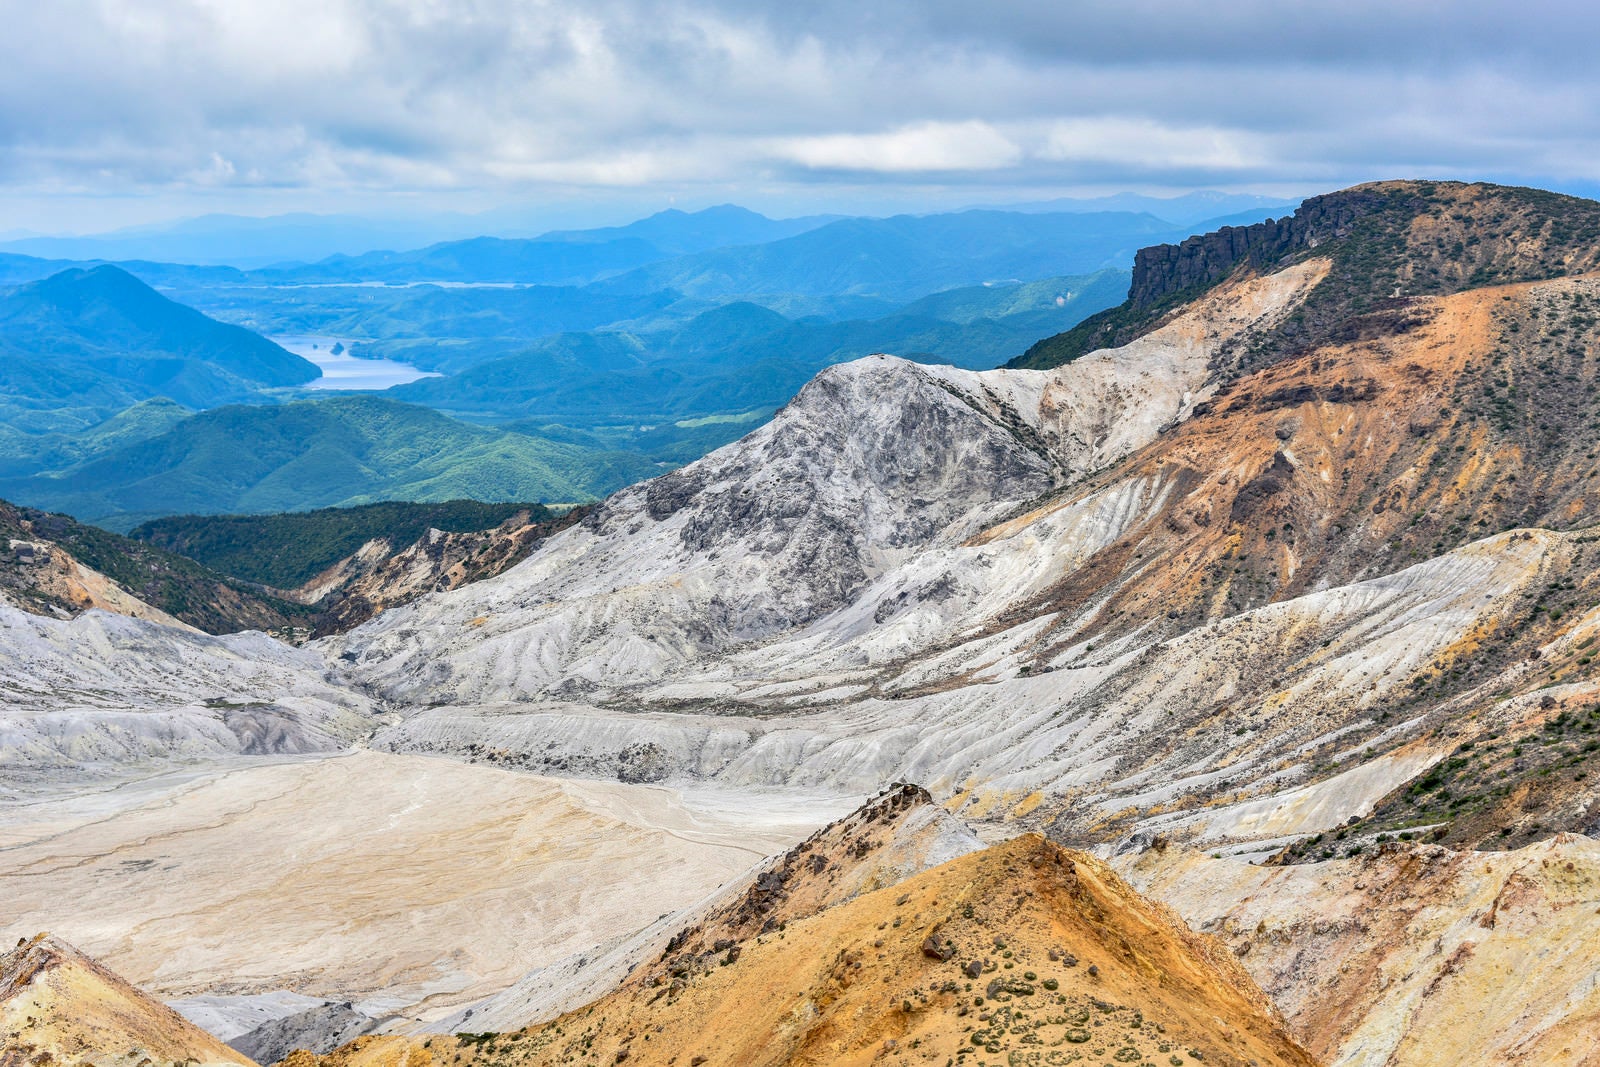 「安達太良山爆裂火口と秋元湖方面」の写真